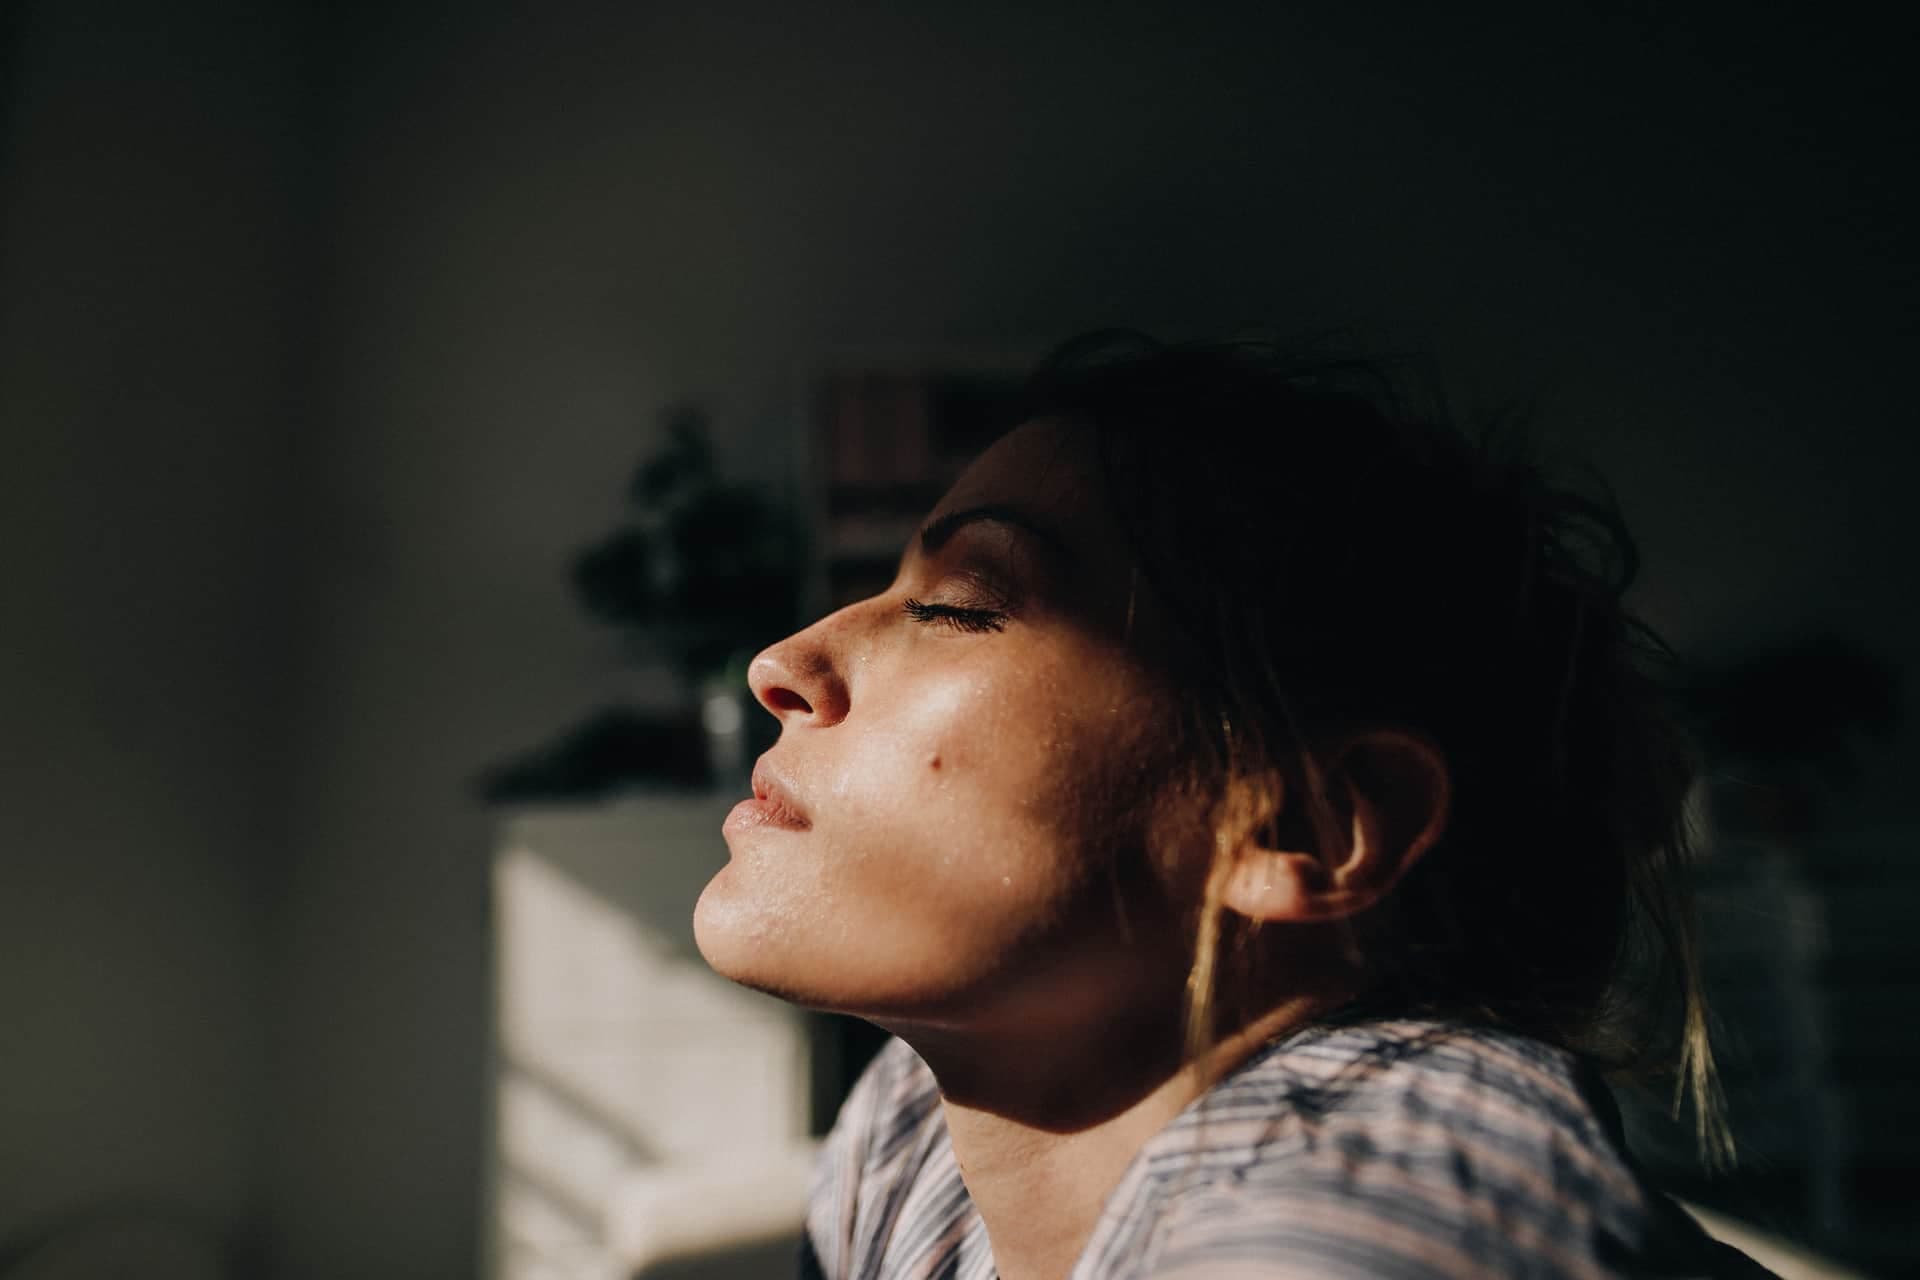 Ett porträtt i profil av en kvinna som blundar med naturligt ljus och skugga i ansiktet